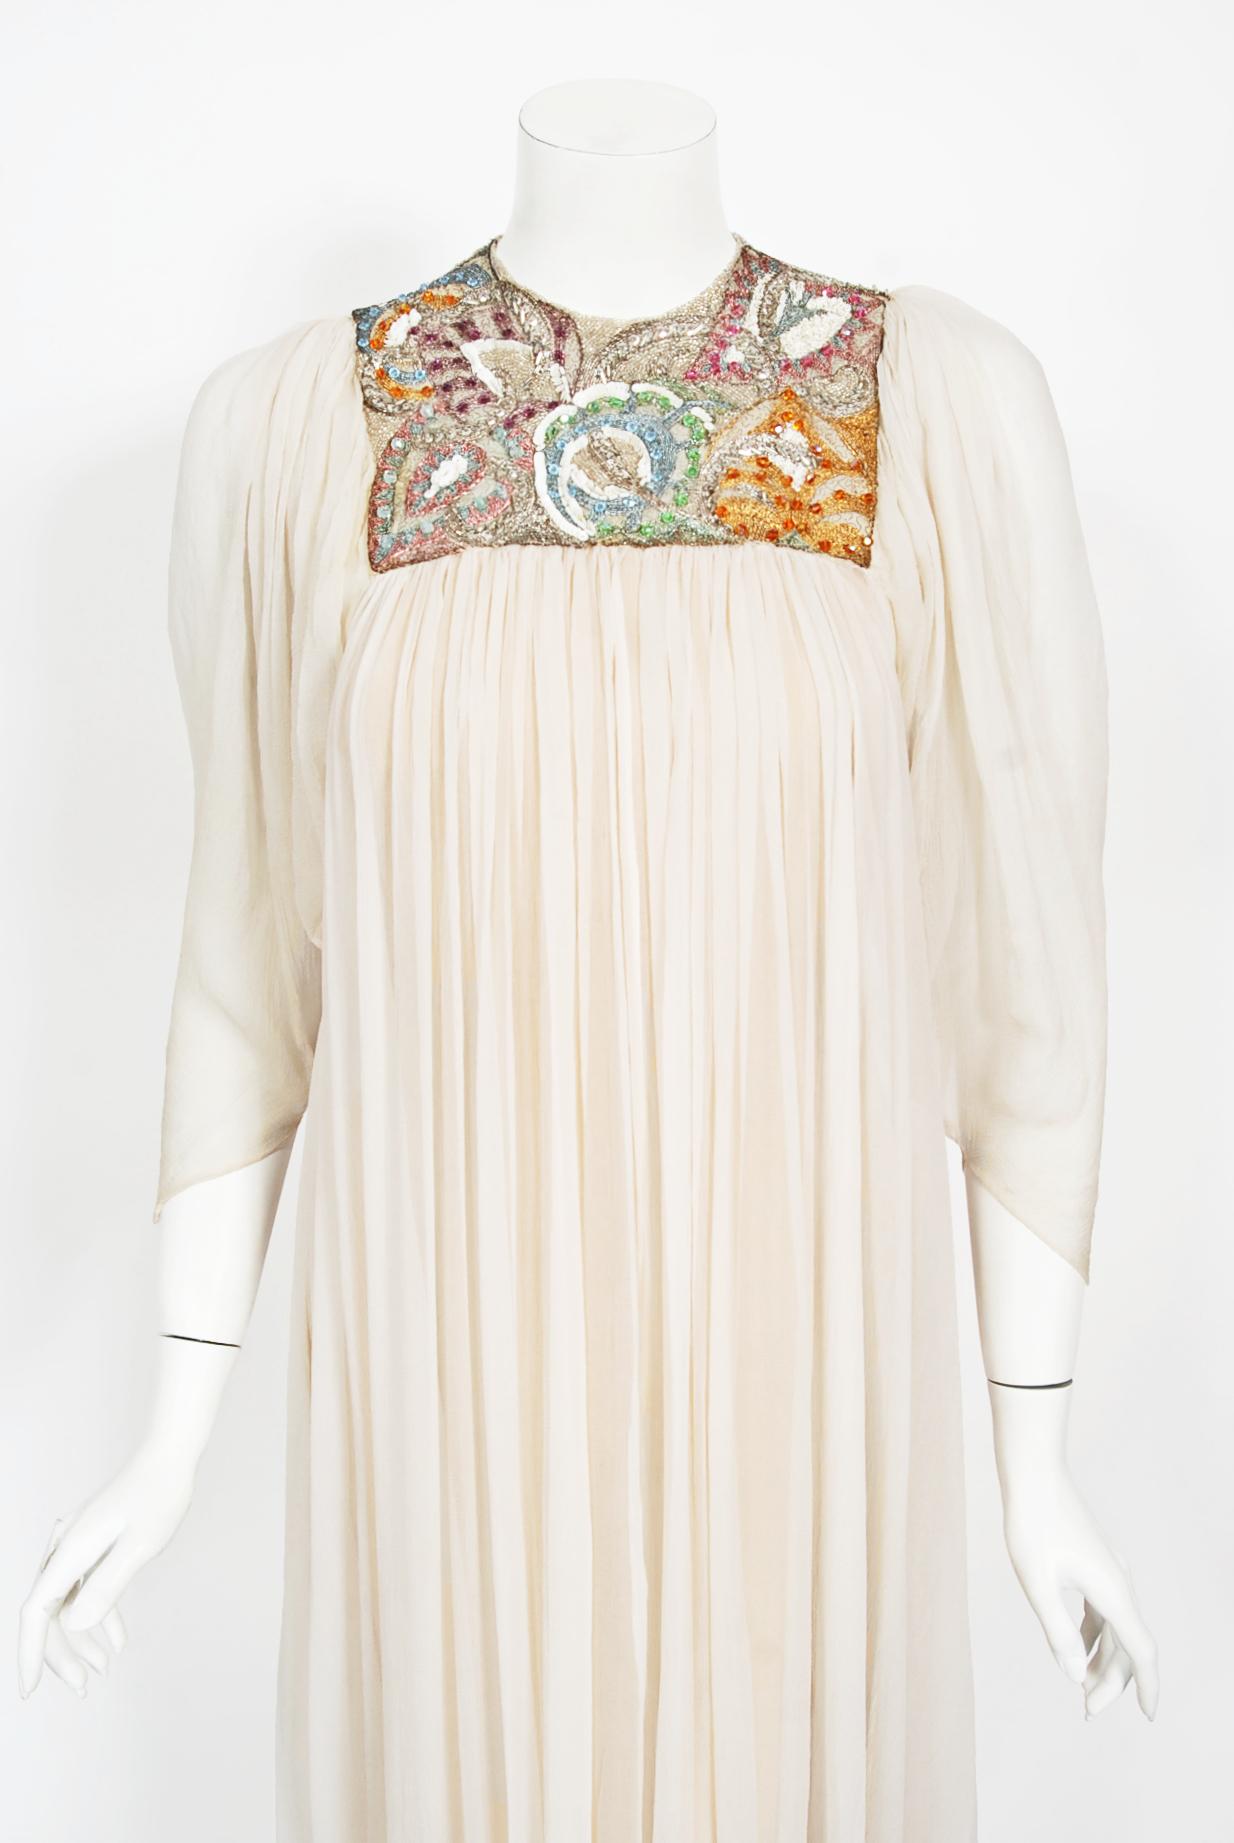 Ein unvergessliches und unglaublich seltenes Madame Grès Haute Couture-Brautkleid aus elfenbeinfarbener Seide. Es stammt aus der Mitte der 1970er Jahre. Auch dieser ätherische Look wurde von Lesage aufwendig verziert, einem französischen